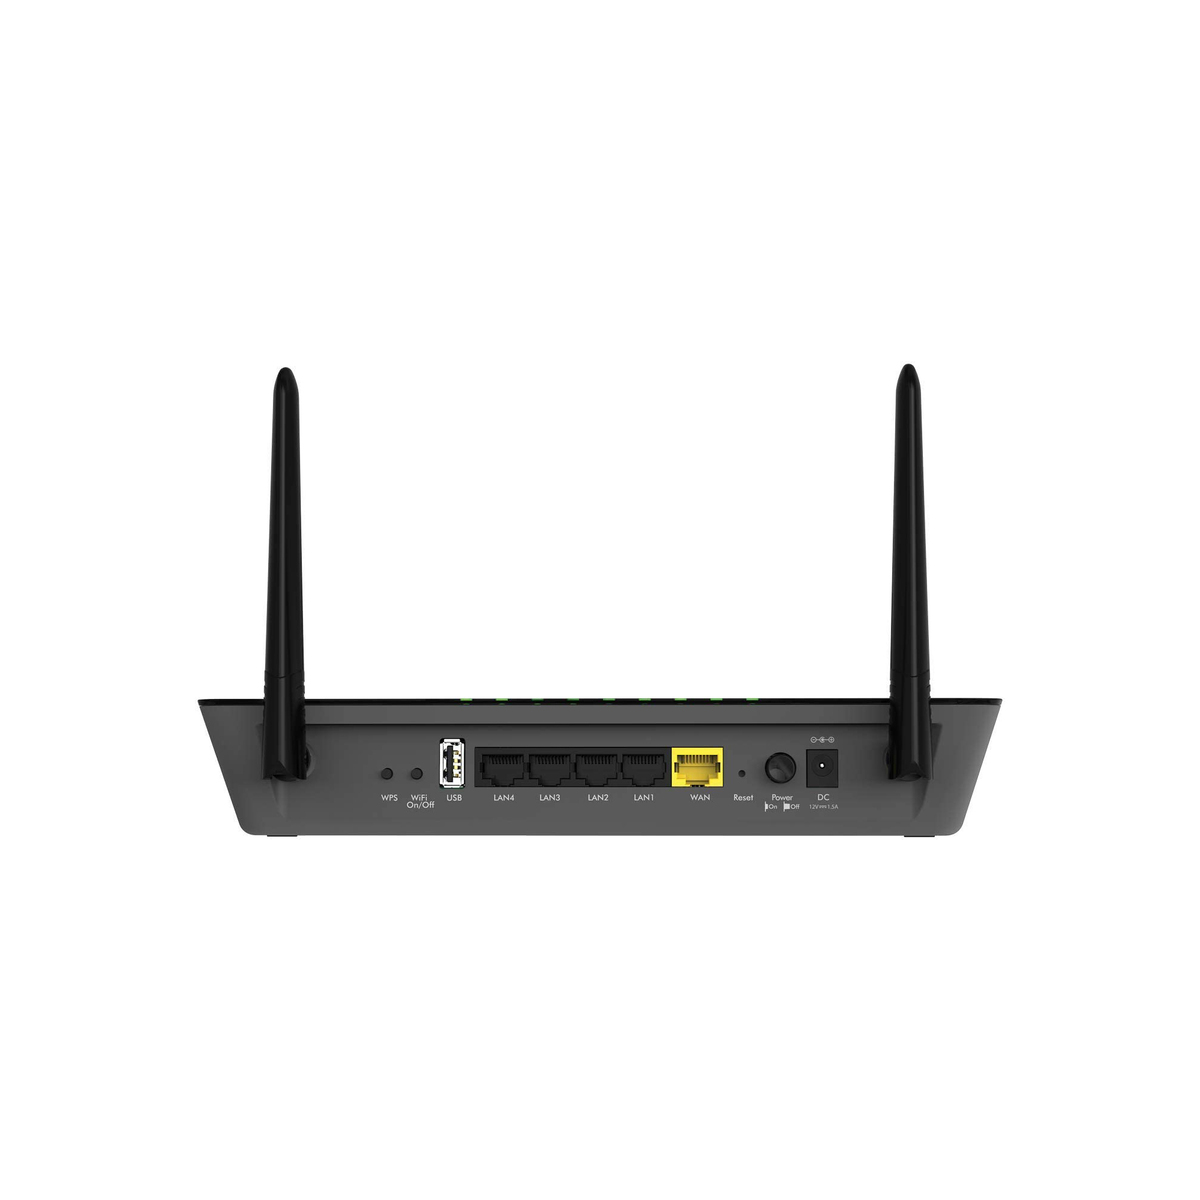 Netgear AC1200 Smart Wi-Fi Router with External Antennas R6220